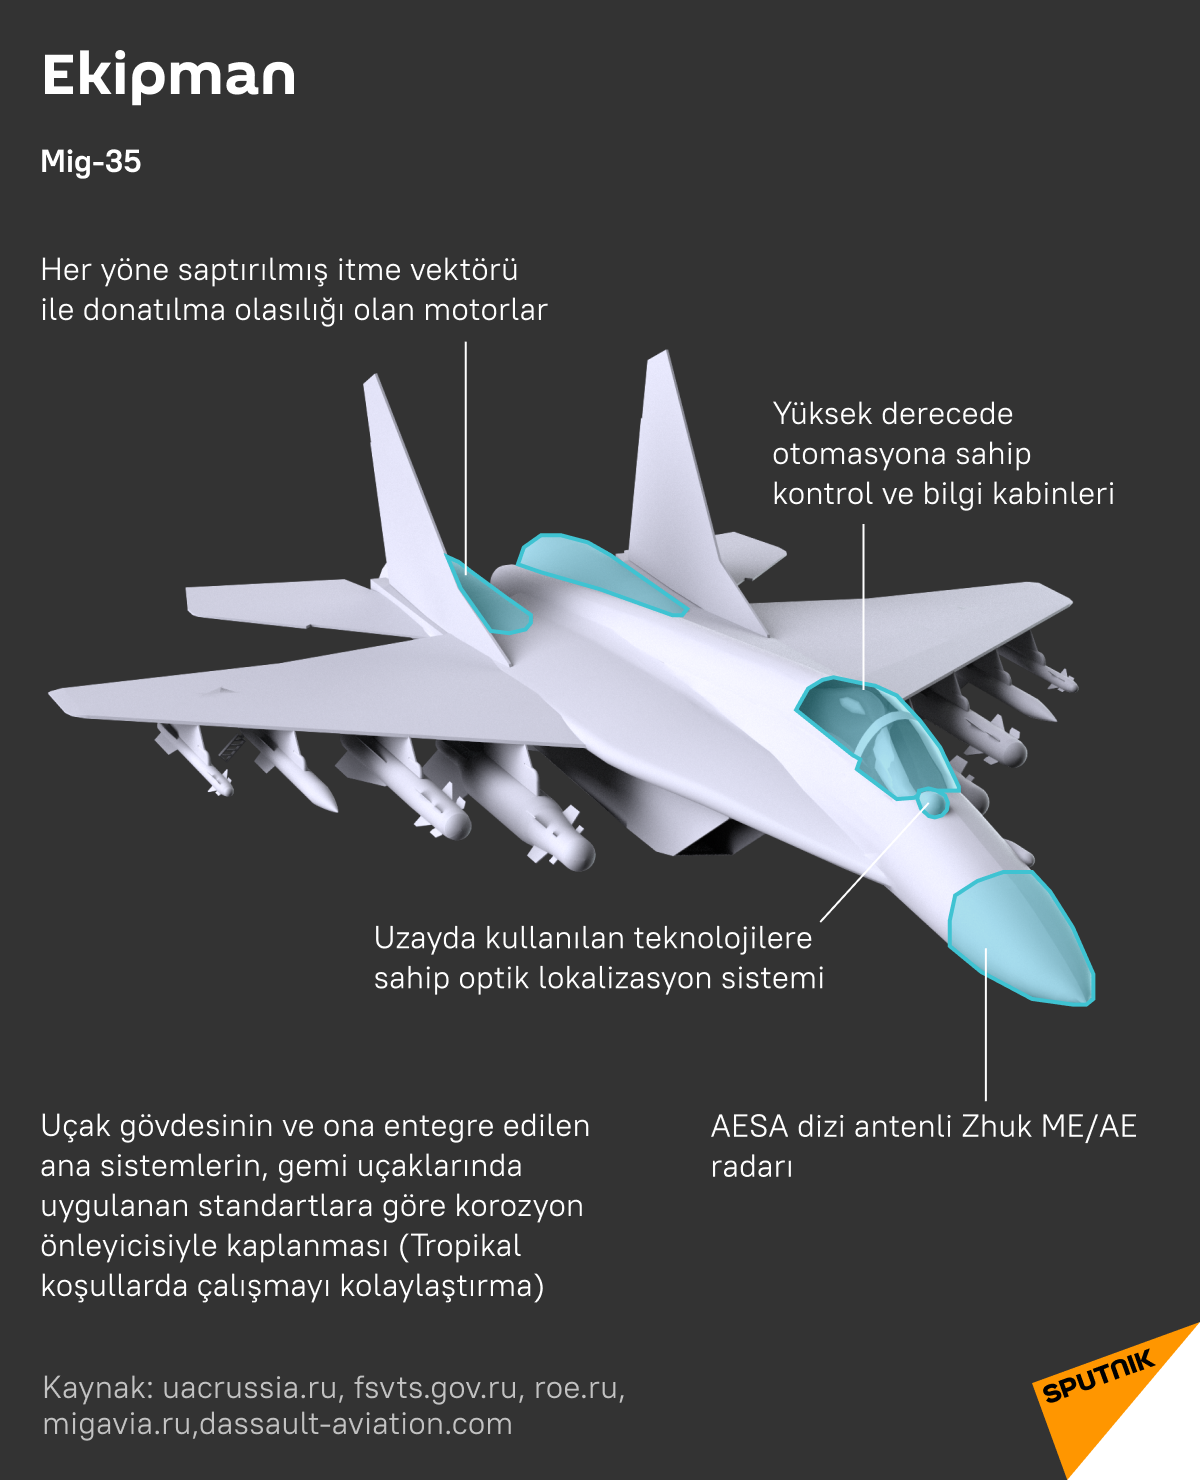 MiG-35 ile Dassault Rafale uçaklarının karşılaştırması - Sputnik Türkiye